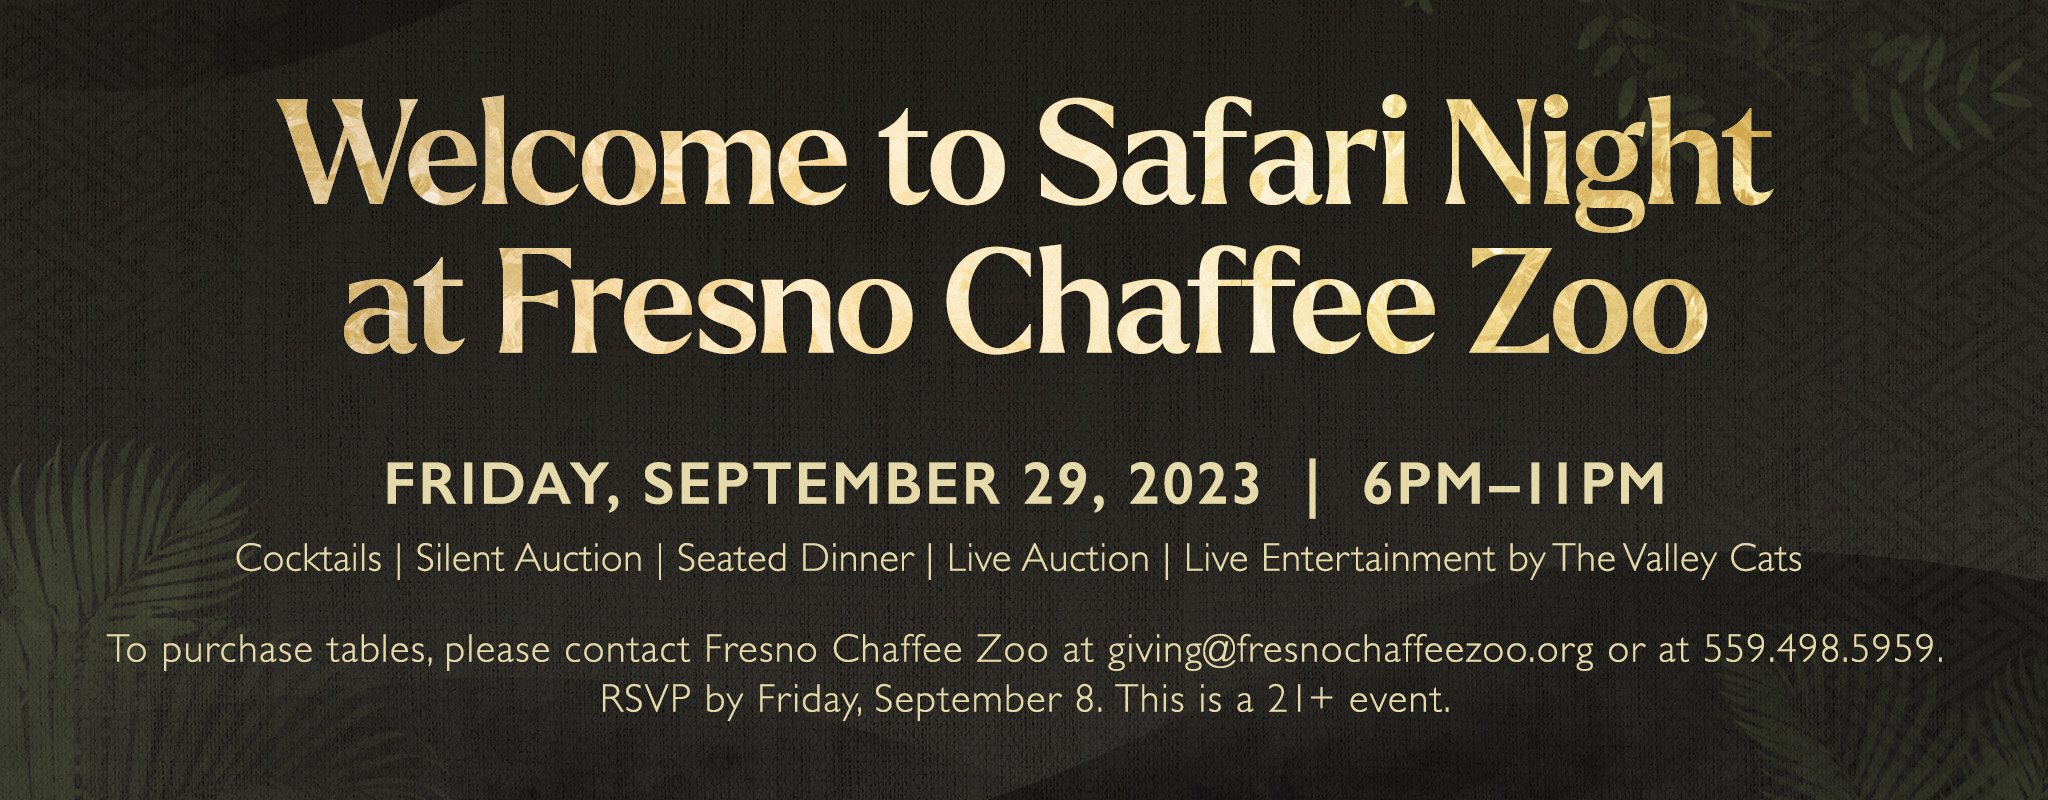 fresno chaffee zoo safari night